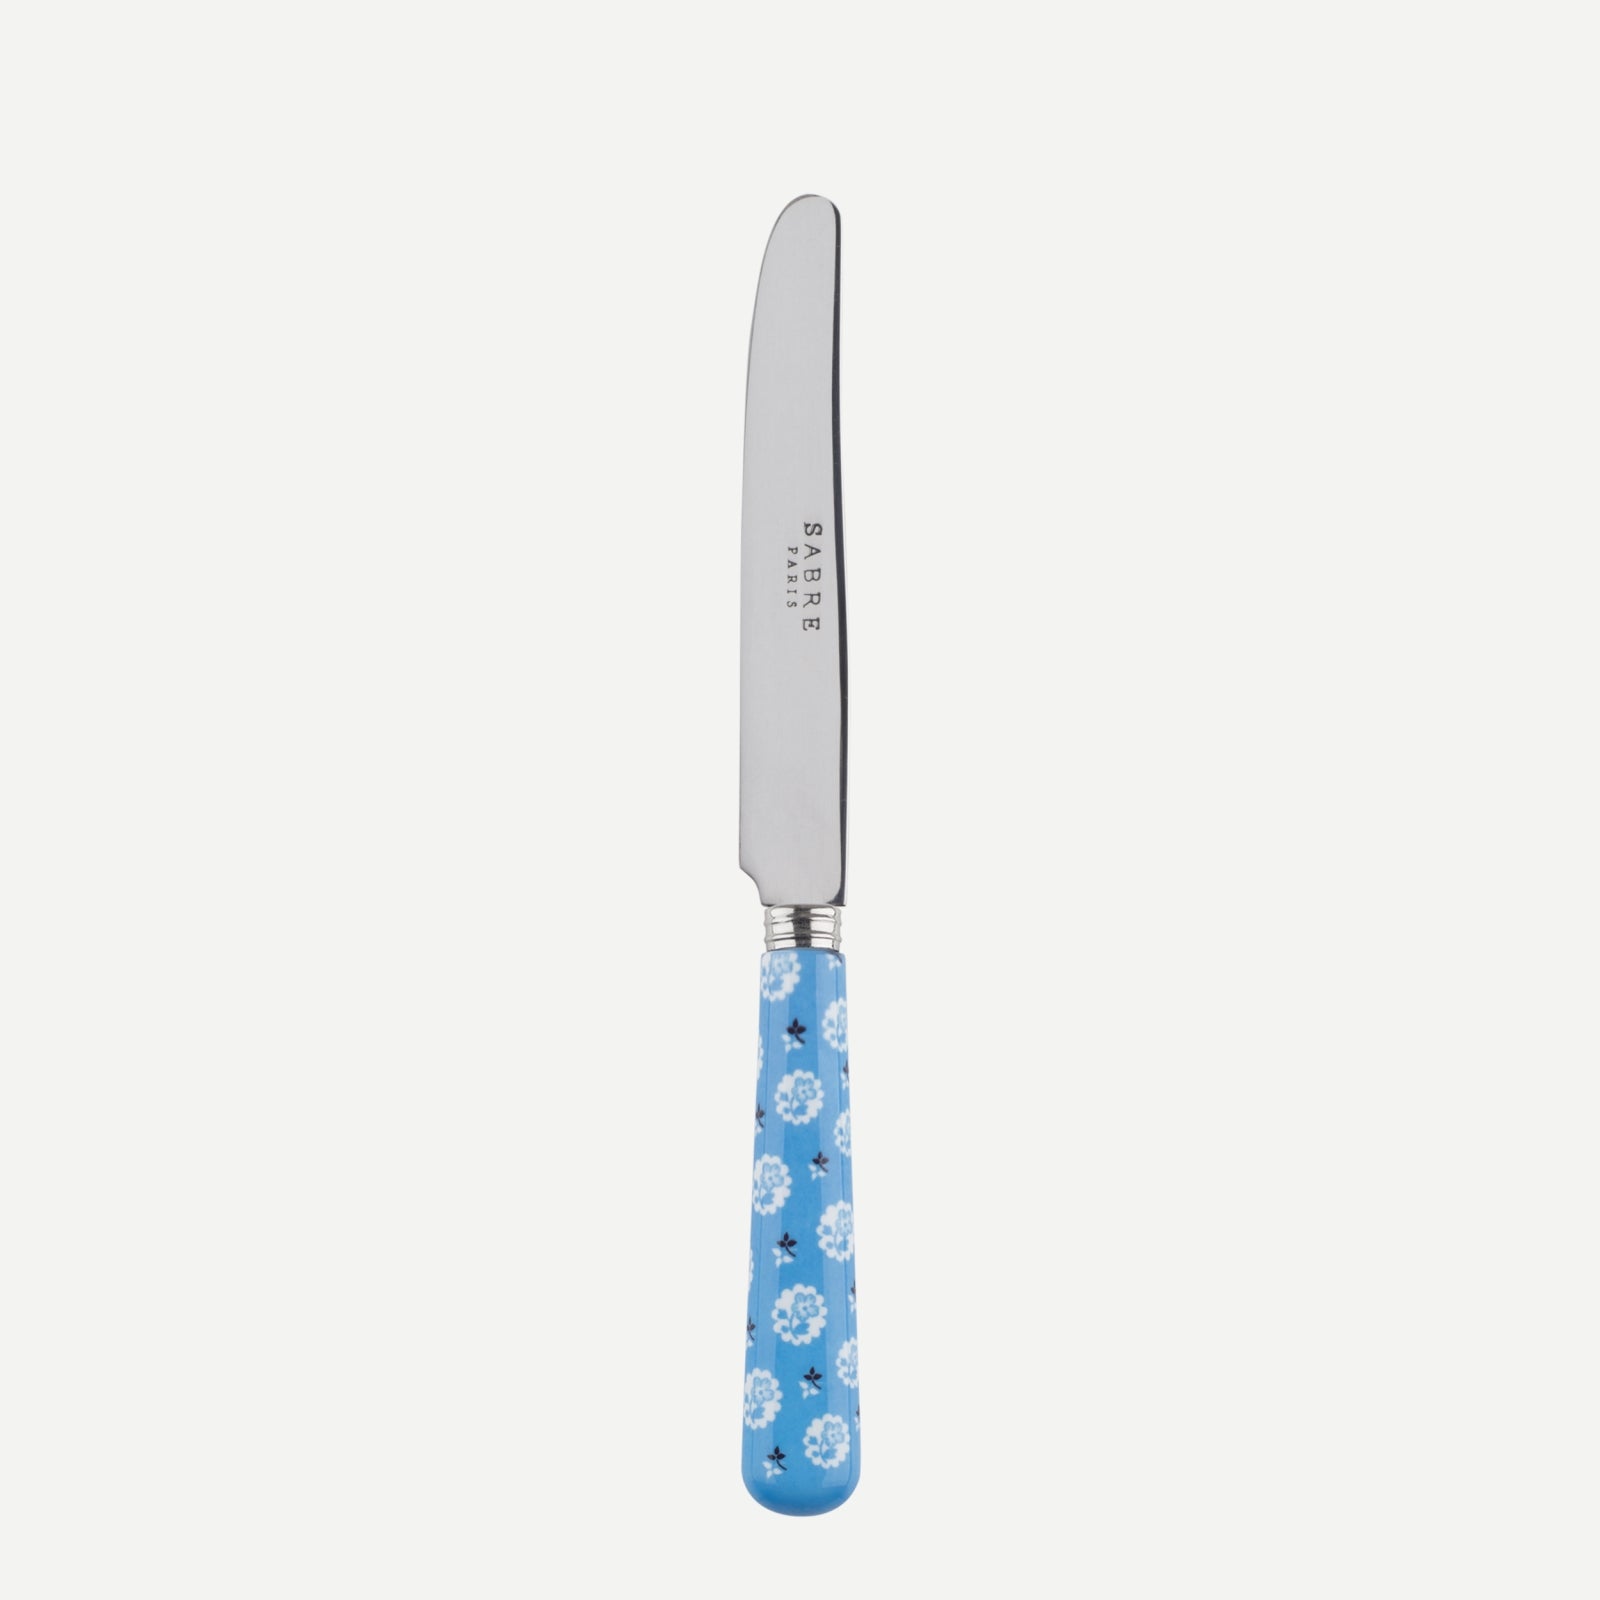 Breakfast knife - Provencal - Light blue